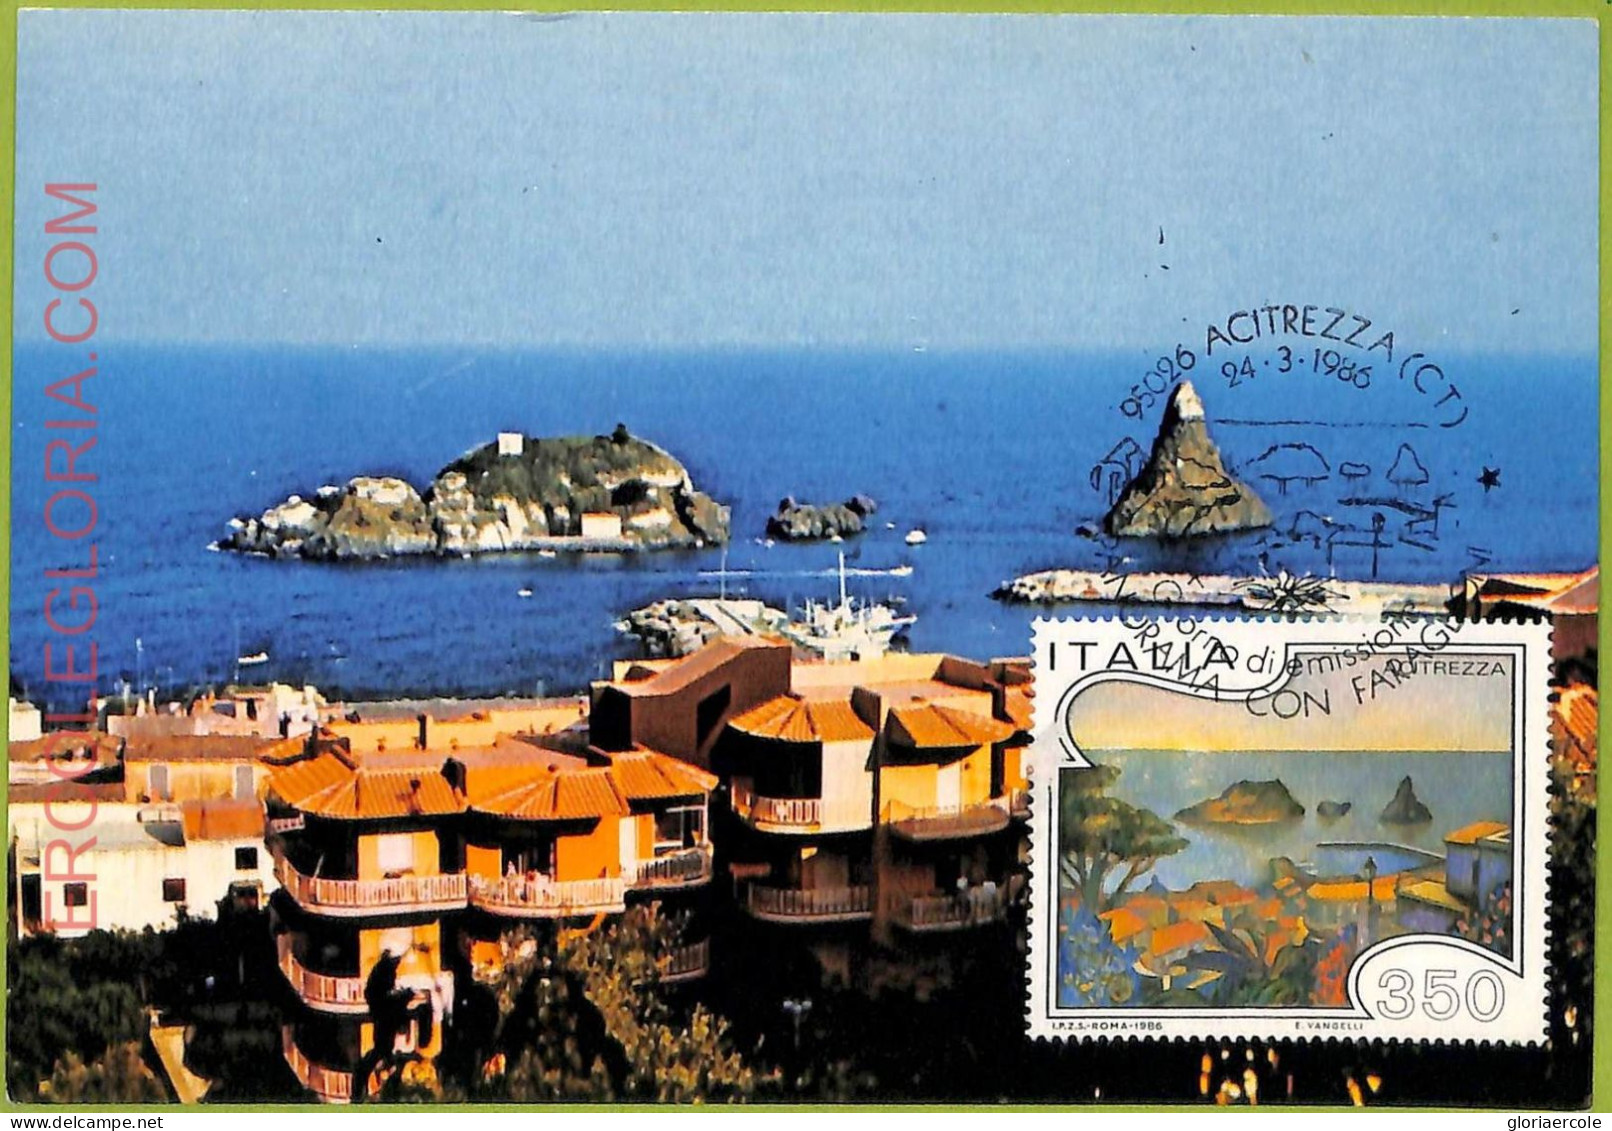 Ad3370 - ITALY - Postal History - MAXIMUM CARD - 1986 - Nature - Maximumkarten (MC)